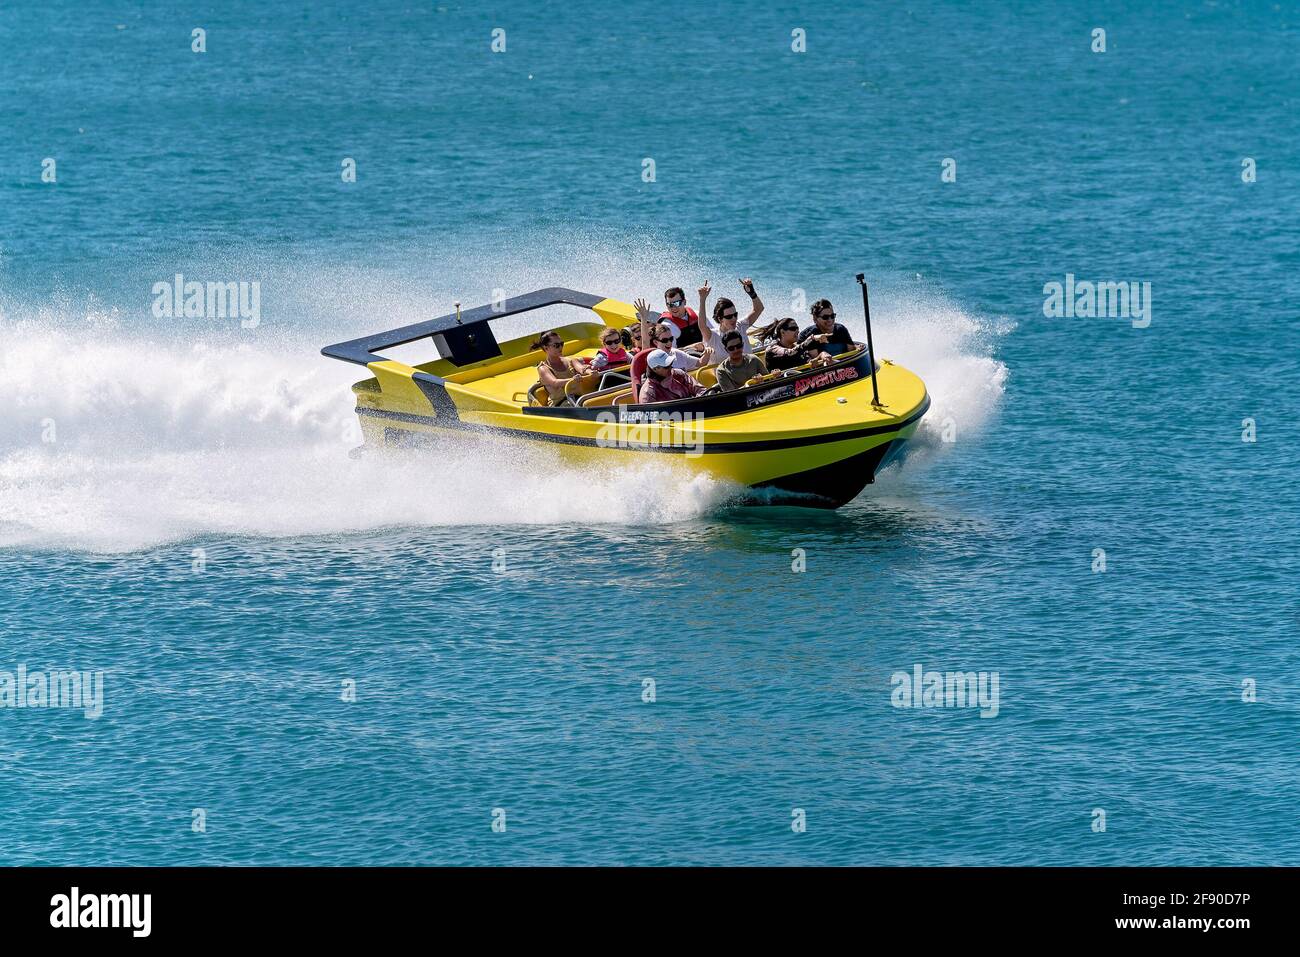 Airlie Beach, Queensland, Australien - 2021. April: Passagiere, die Spaß bei einer Jetboot-Adrenalinfahrt auf dem Meer bei Whitsundays haben Stockfoto